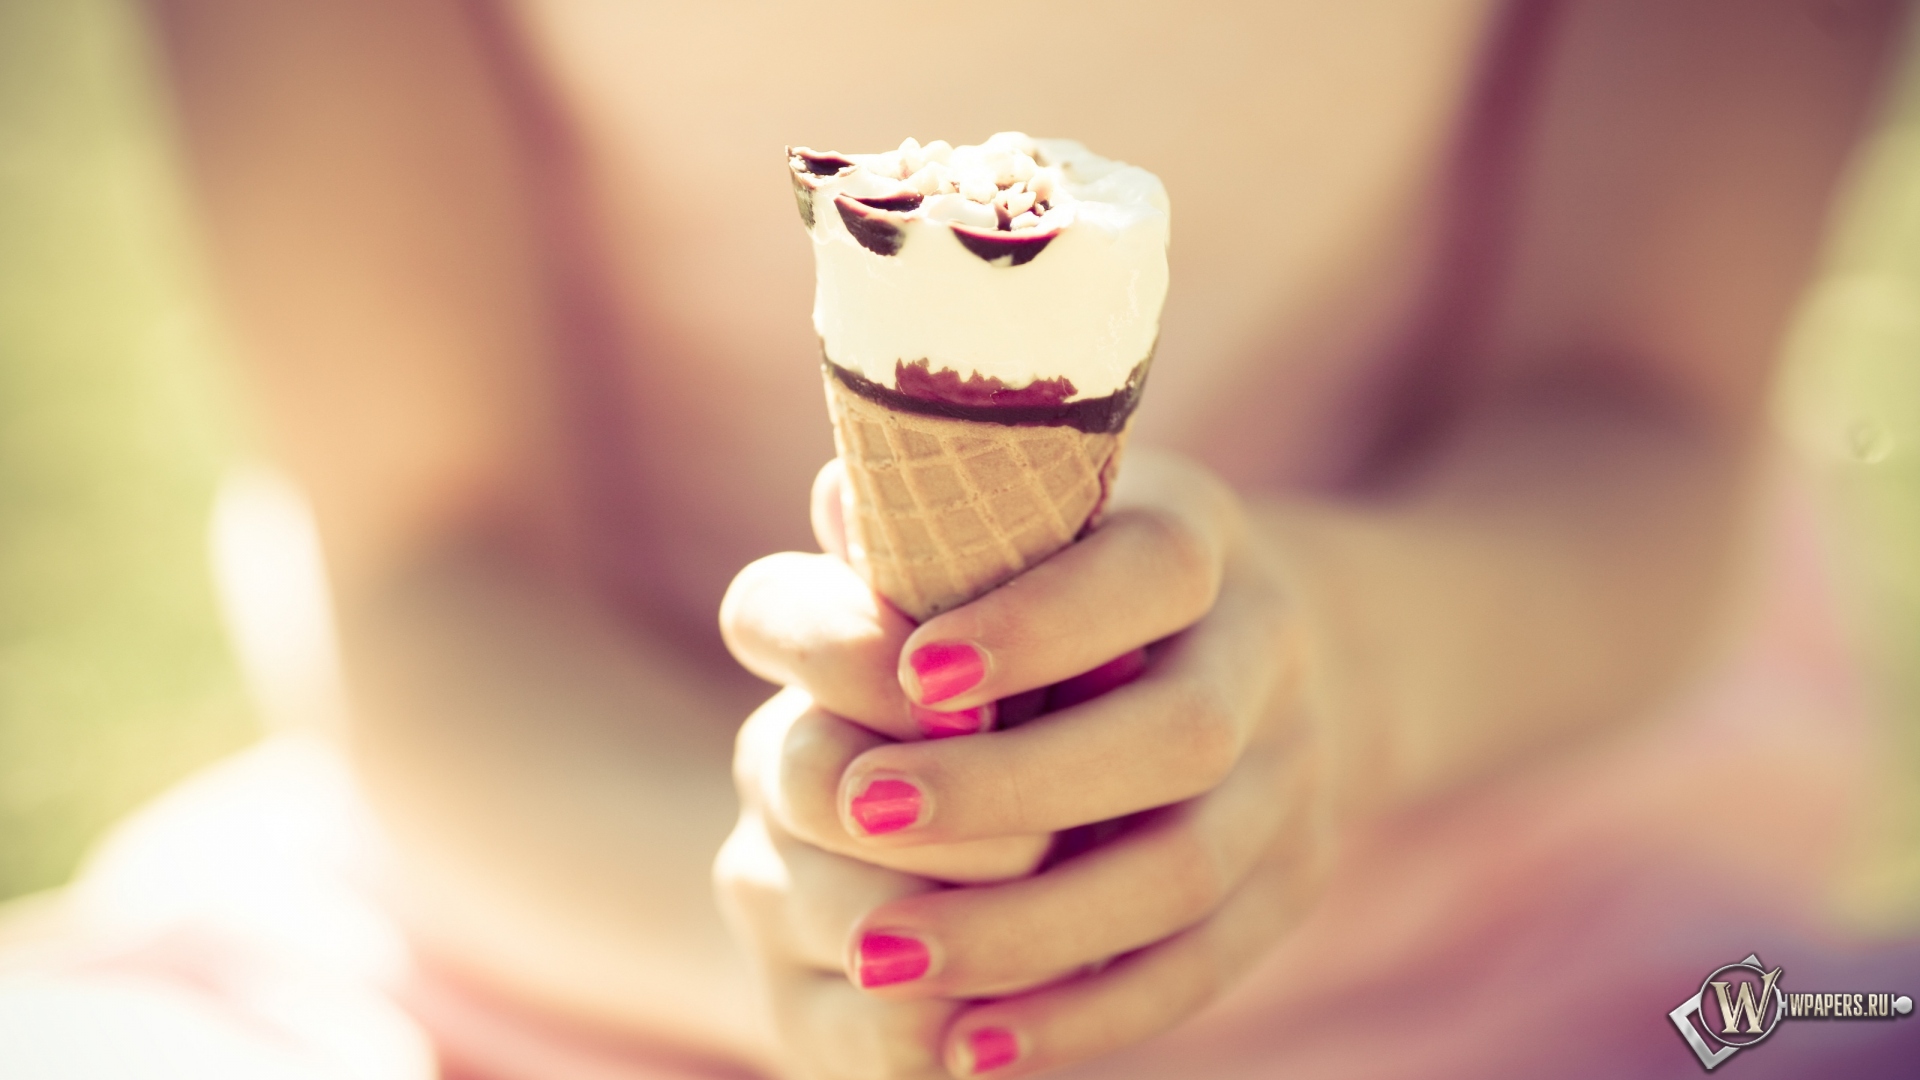 Шоколадное мороженое 1920x1080